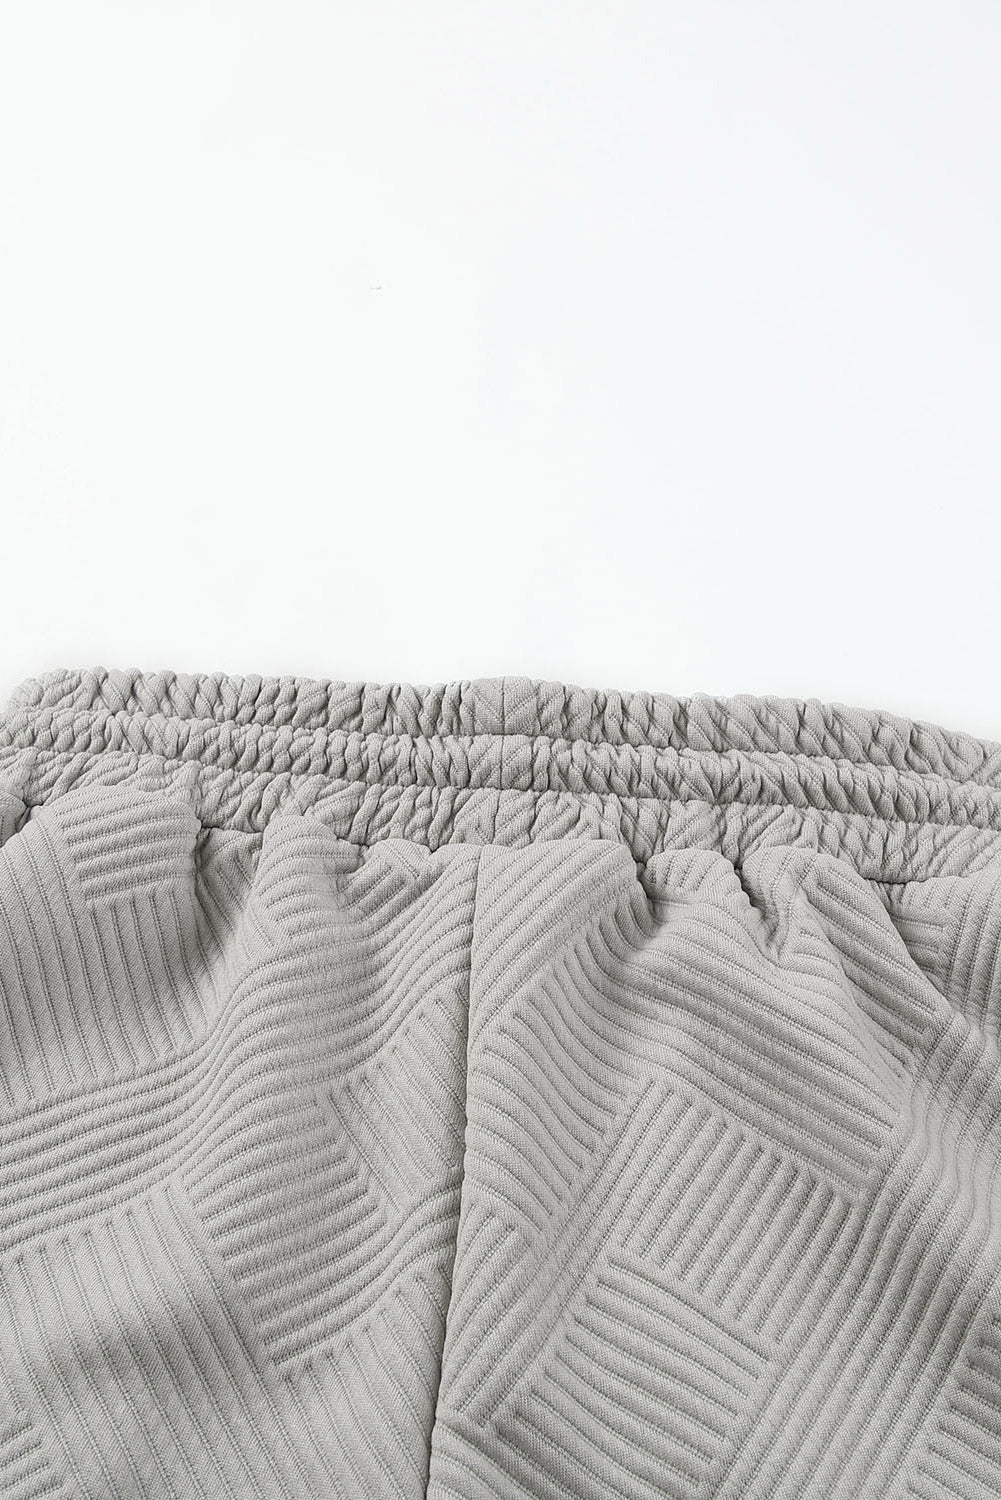 Cali Chic Gray 2pcs Solid Textured Drawstring Shorts Set